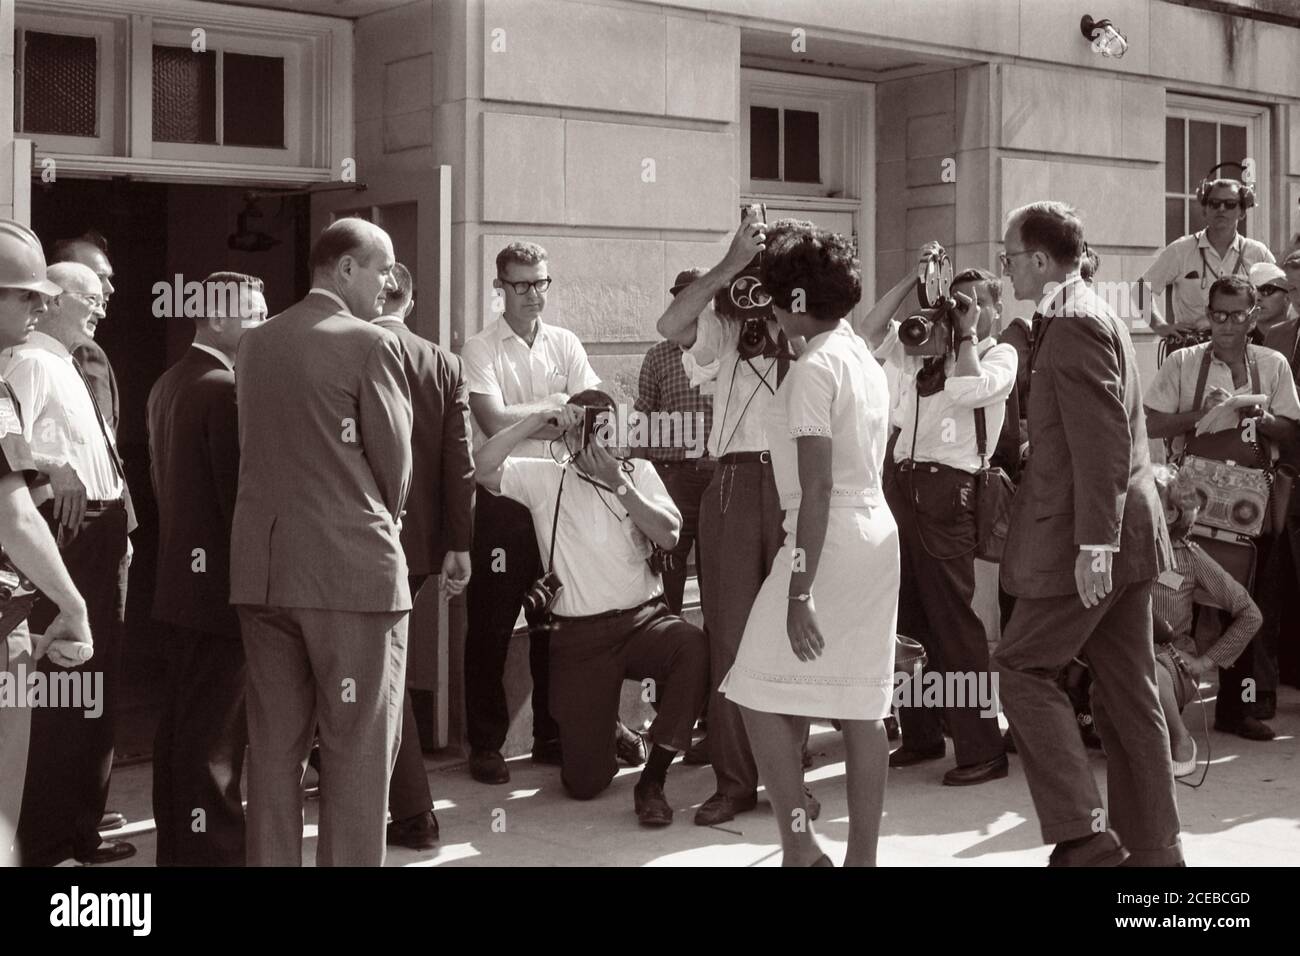 Vivian Malone, eine der ersten Afroamerikaner, die an der Universität von Alabama teilnahmen, geht durch eine Menschenmenge, die Fotografen, Mitglieder der Nationalgarde und den stellvertretenden US-Generalstaatsanwalt Nicholas Katzenbach umfasst, um das Foster Auditorium zu betreten, um sich für den Unterricht am 11. Juni 1963 anzumelden. Stockfoto